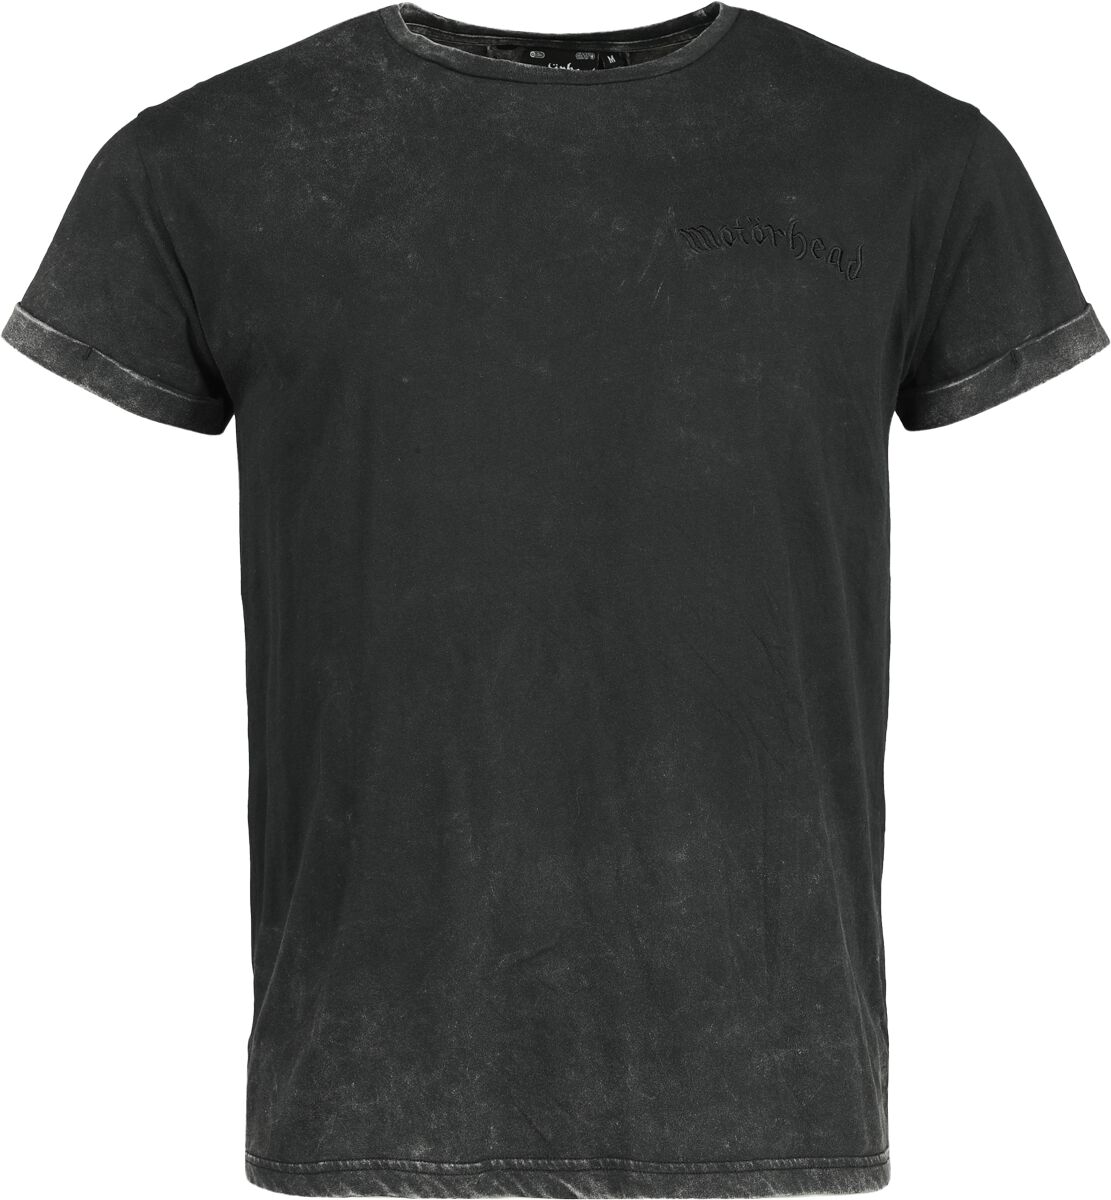 Motörhead T-Shirt - EMP Signature Collection - S bis 3XL - für Männer - Größe XXL - dunkelgrau  - EMP exklusives Merchandise!